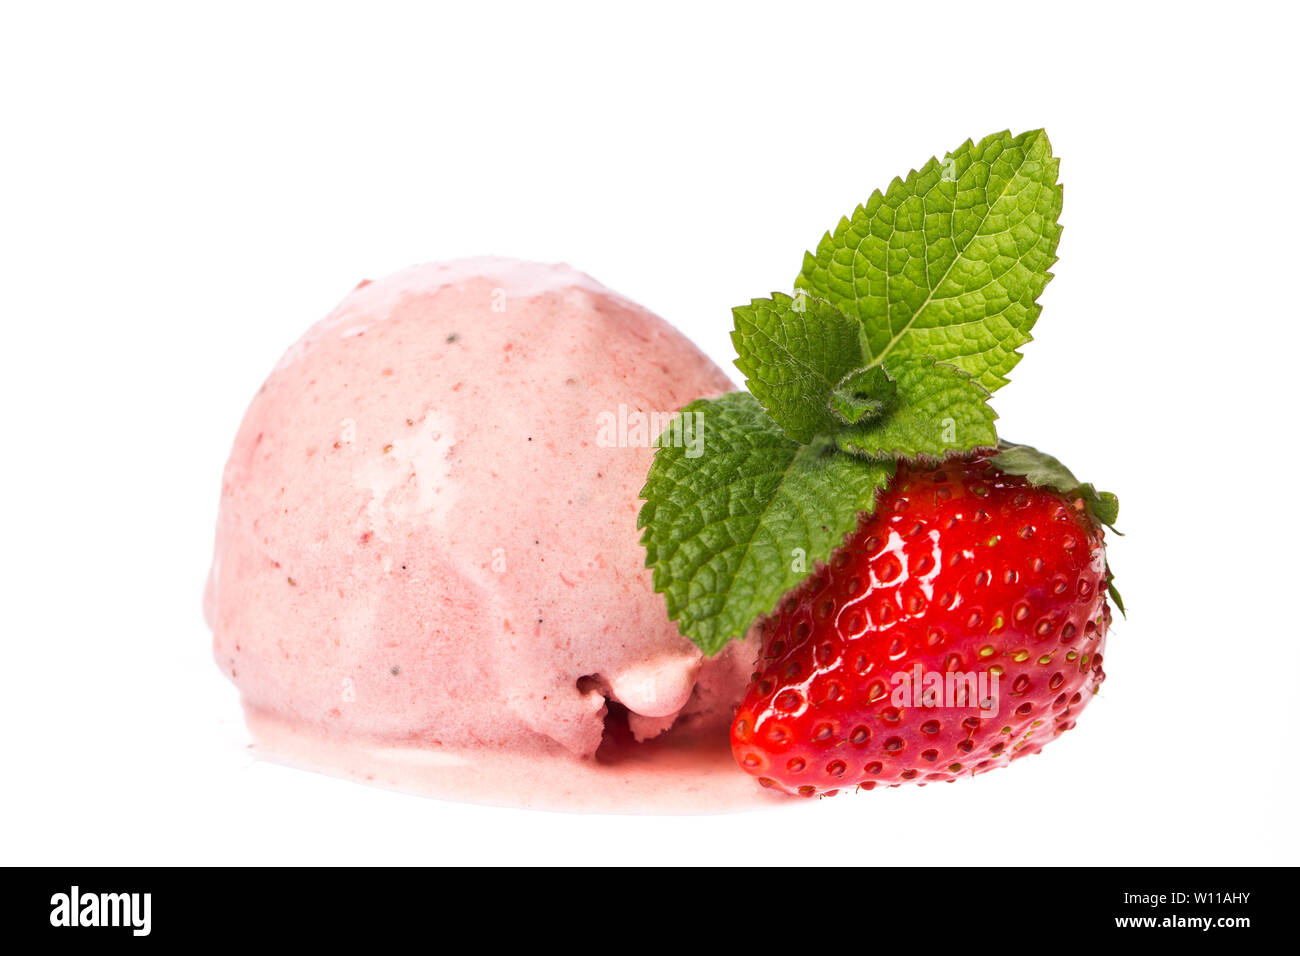 Eine Kugel erdbeer-Eis mit Erdbeeren und Minze auf weißem Hintergrund. Echten essbaren Eis - ohne künstliche Zusatzstoffe verwendet Stockfoto